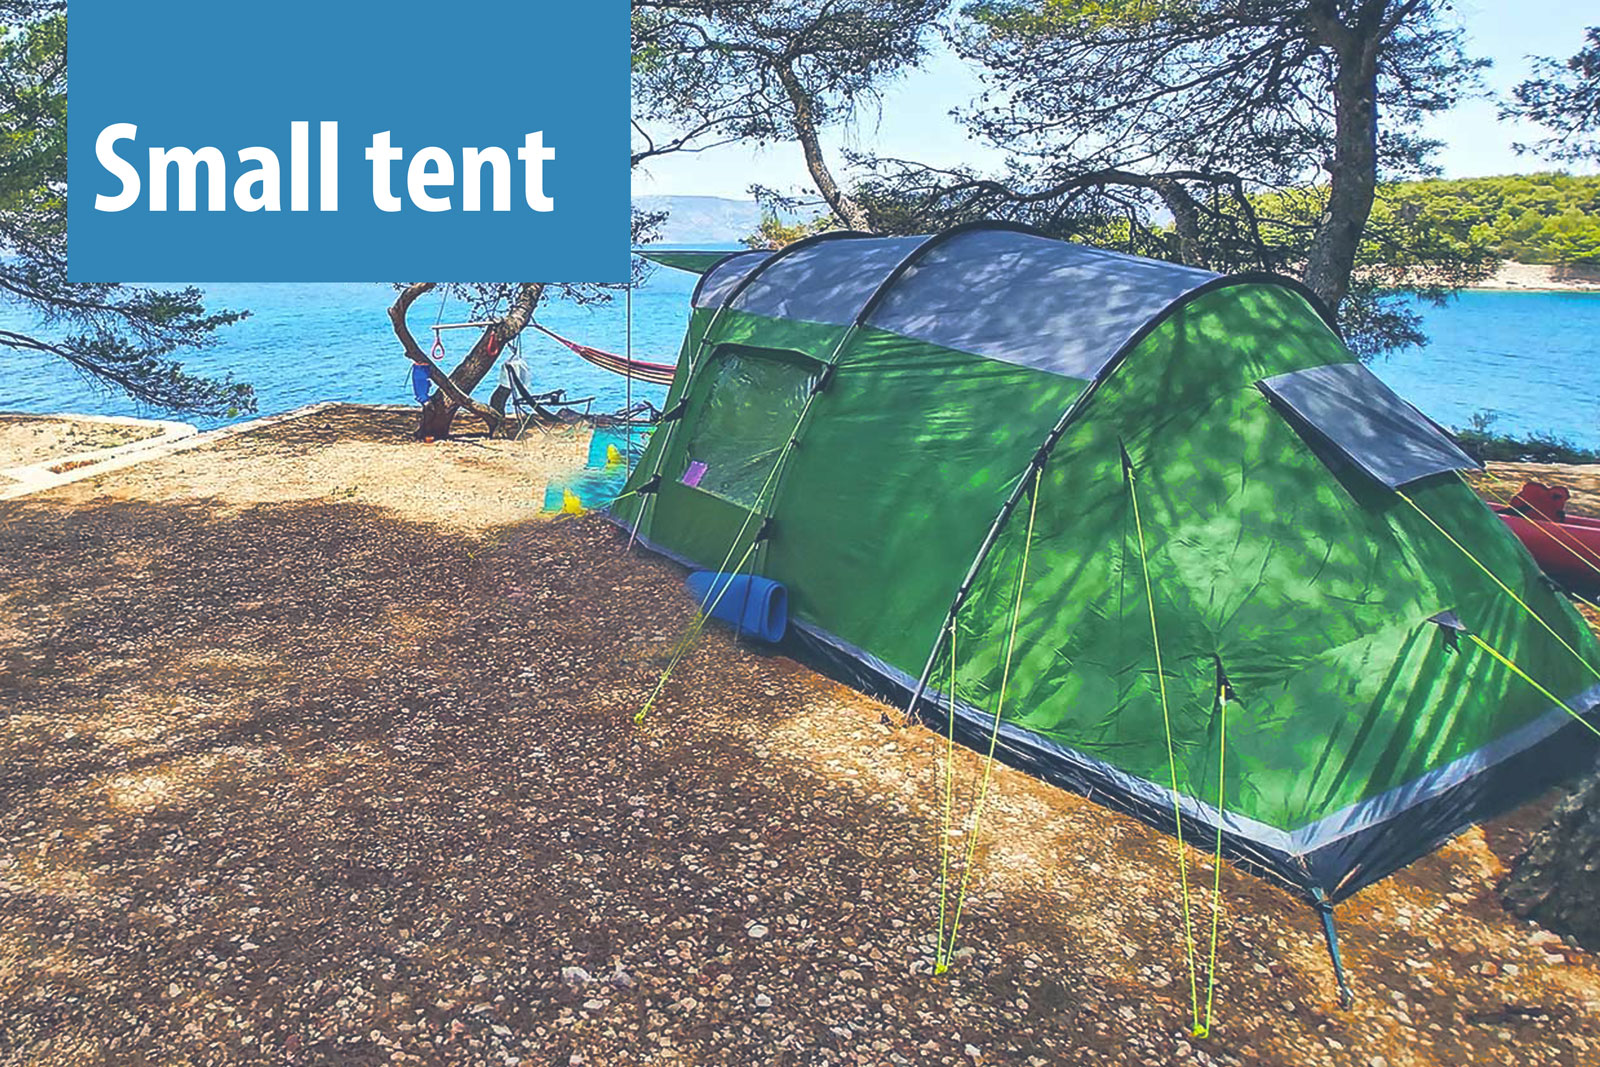 Kamp mjesto za mali šator